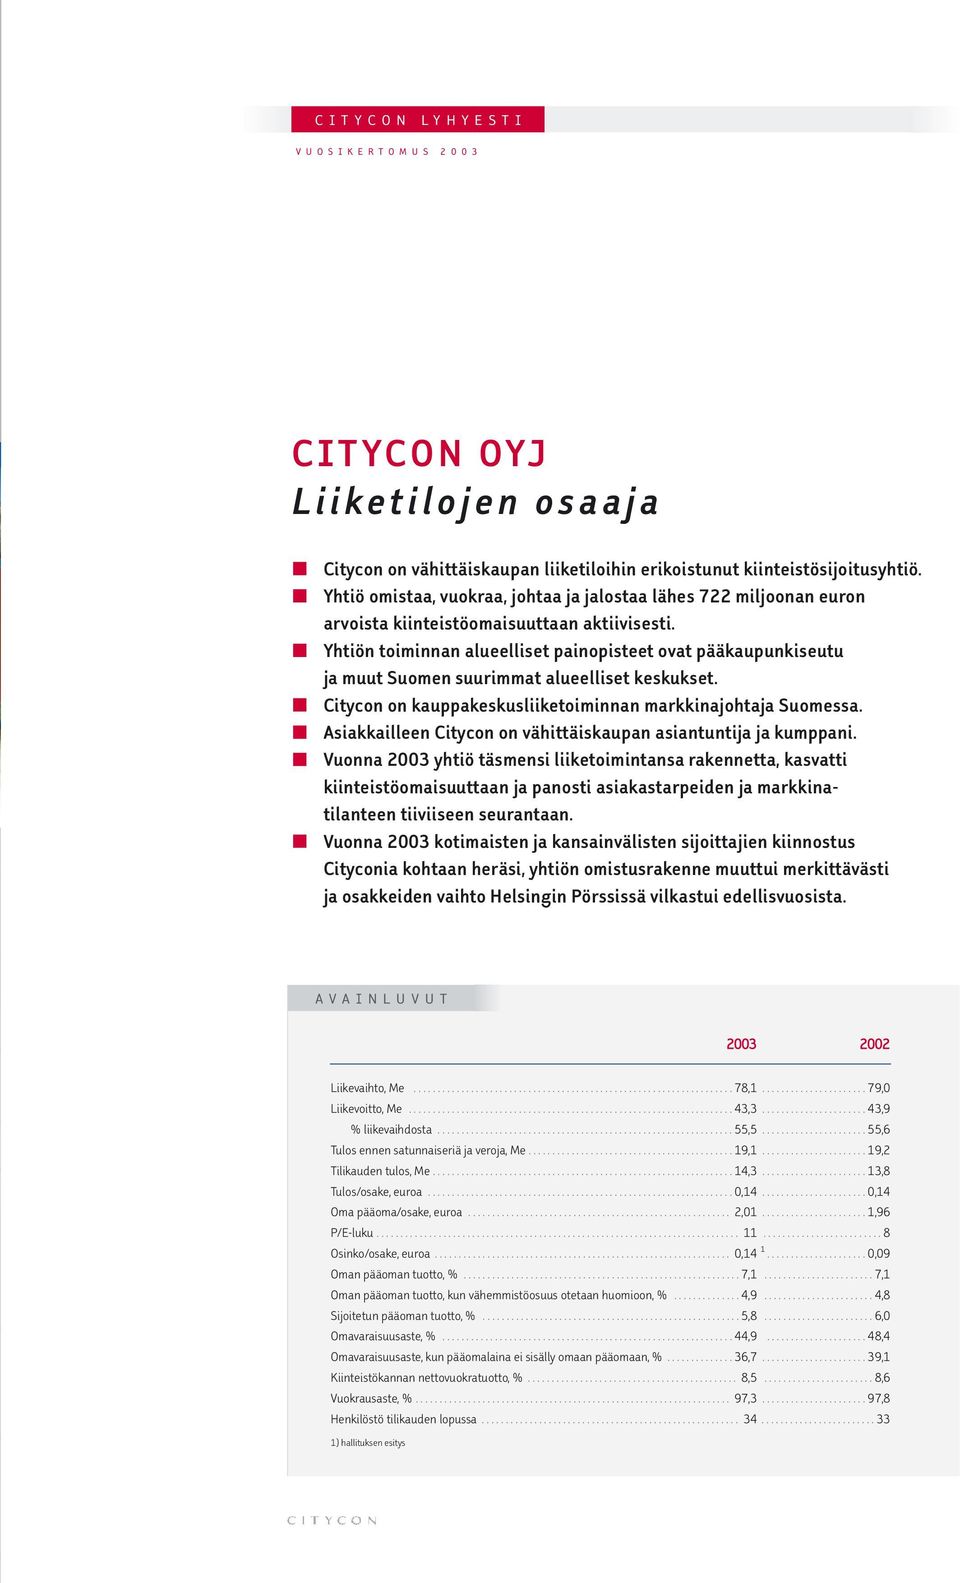 Yhtiön toiminnan alueelliset painopisteet ovat pääkaupunkiseutu ja muut Suomen suurimmat alueelliset keskukset. Citycon on kauppakeskusliiketoiminnan markkinajohtaja Suomessa.